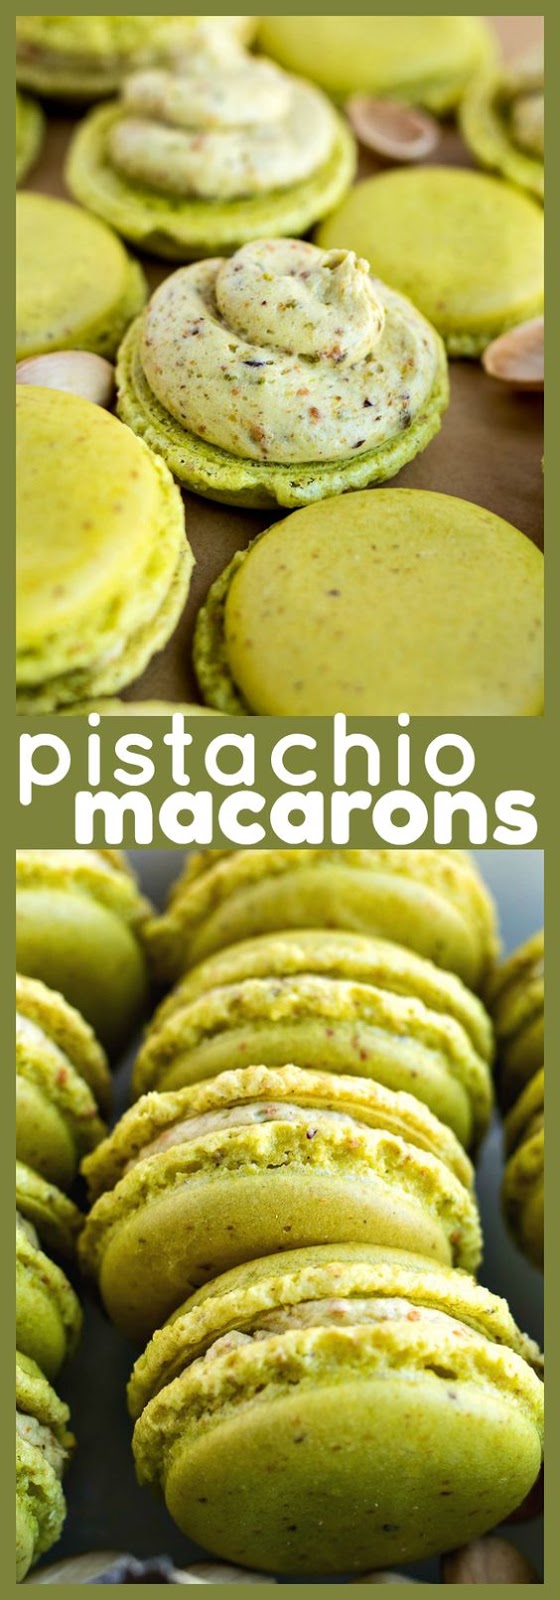 Pistachio Macarons - Healthy Cookies Recipe